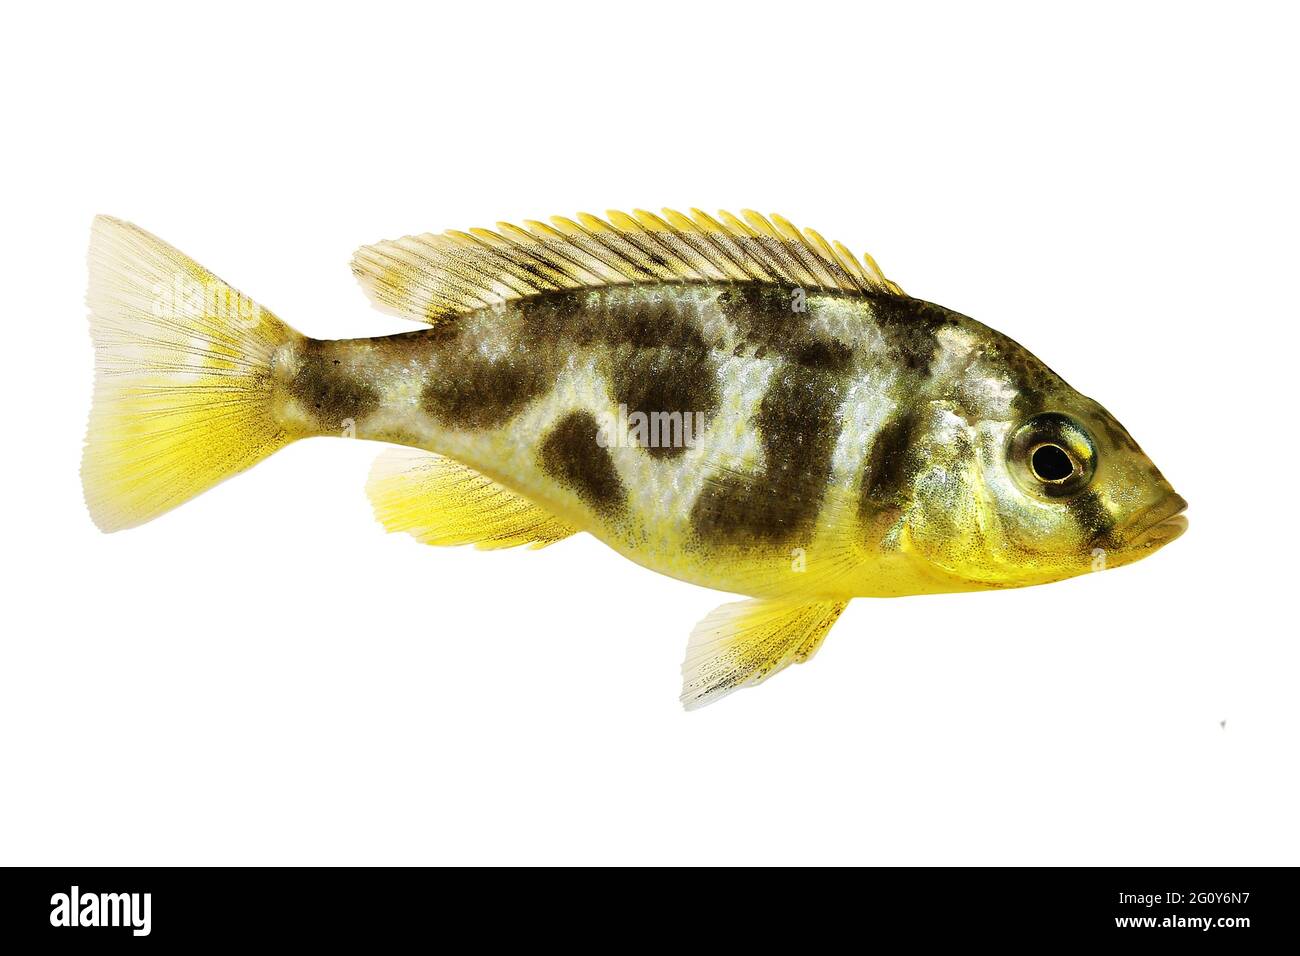 Venustus Cichlid Nimbochromis venustus aquarium fish Stock Photo